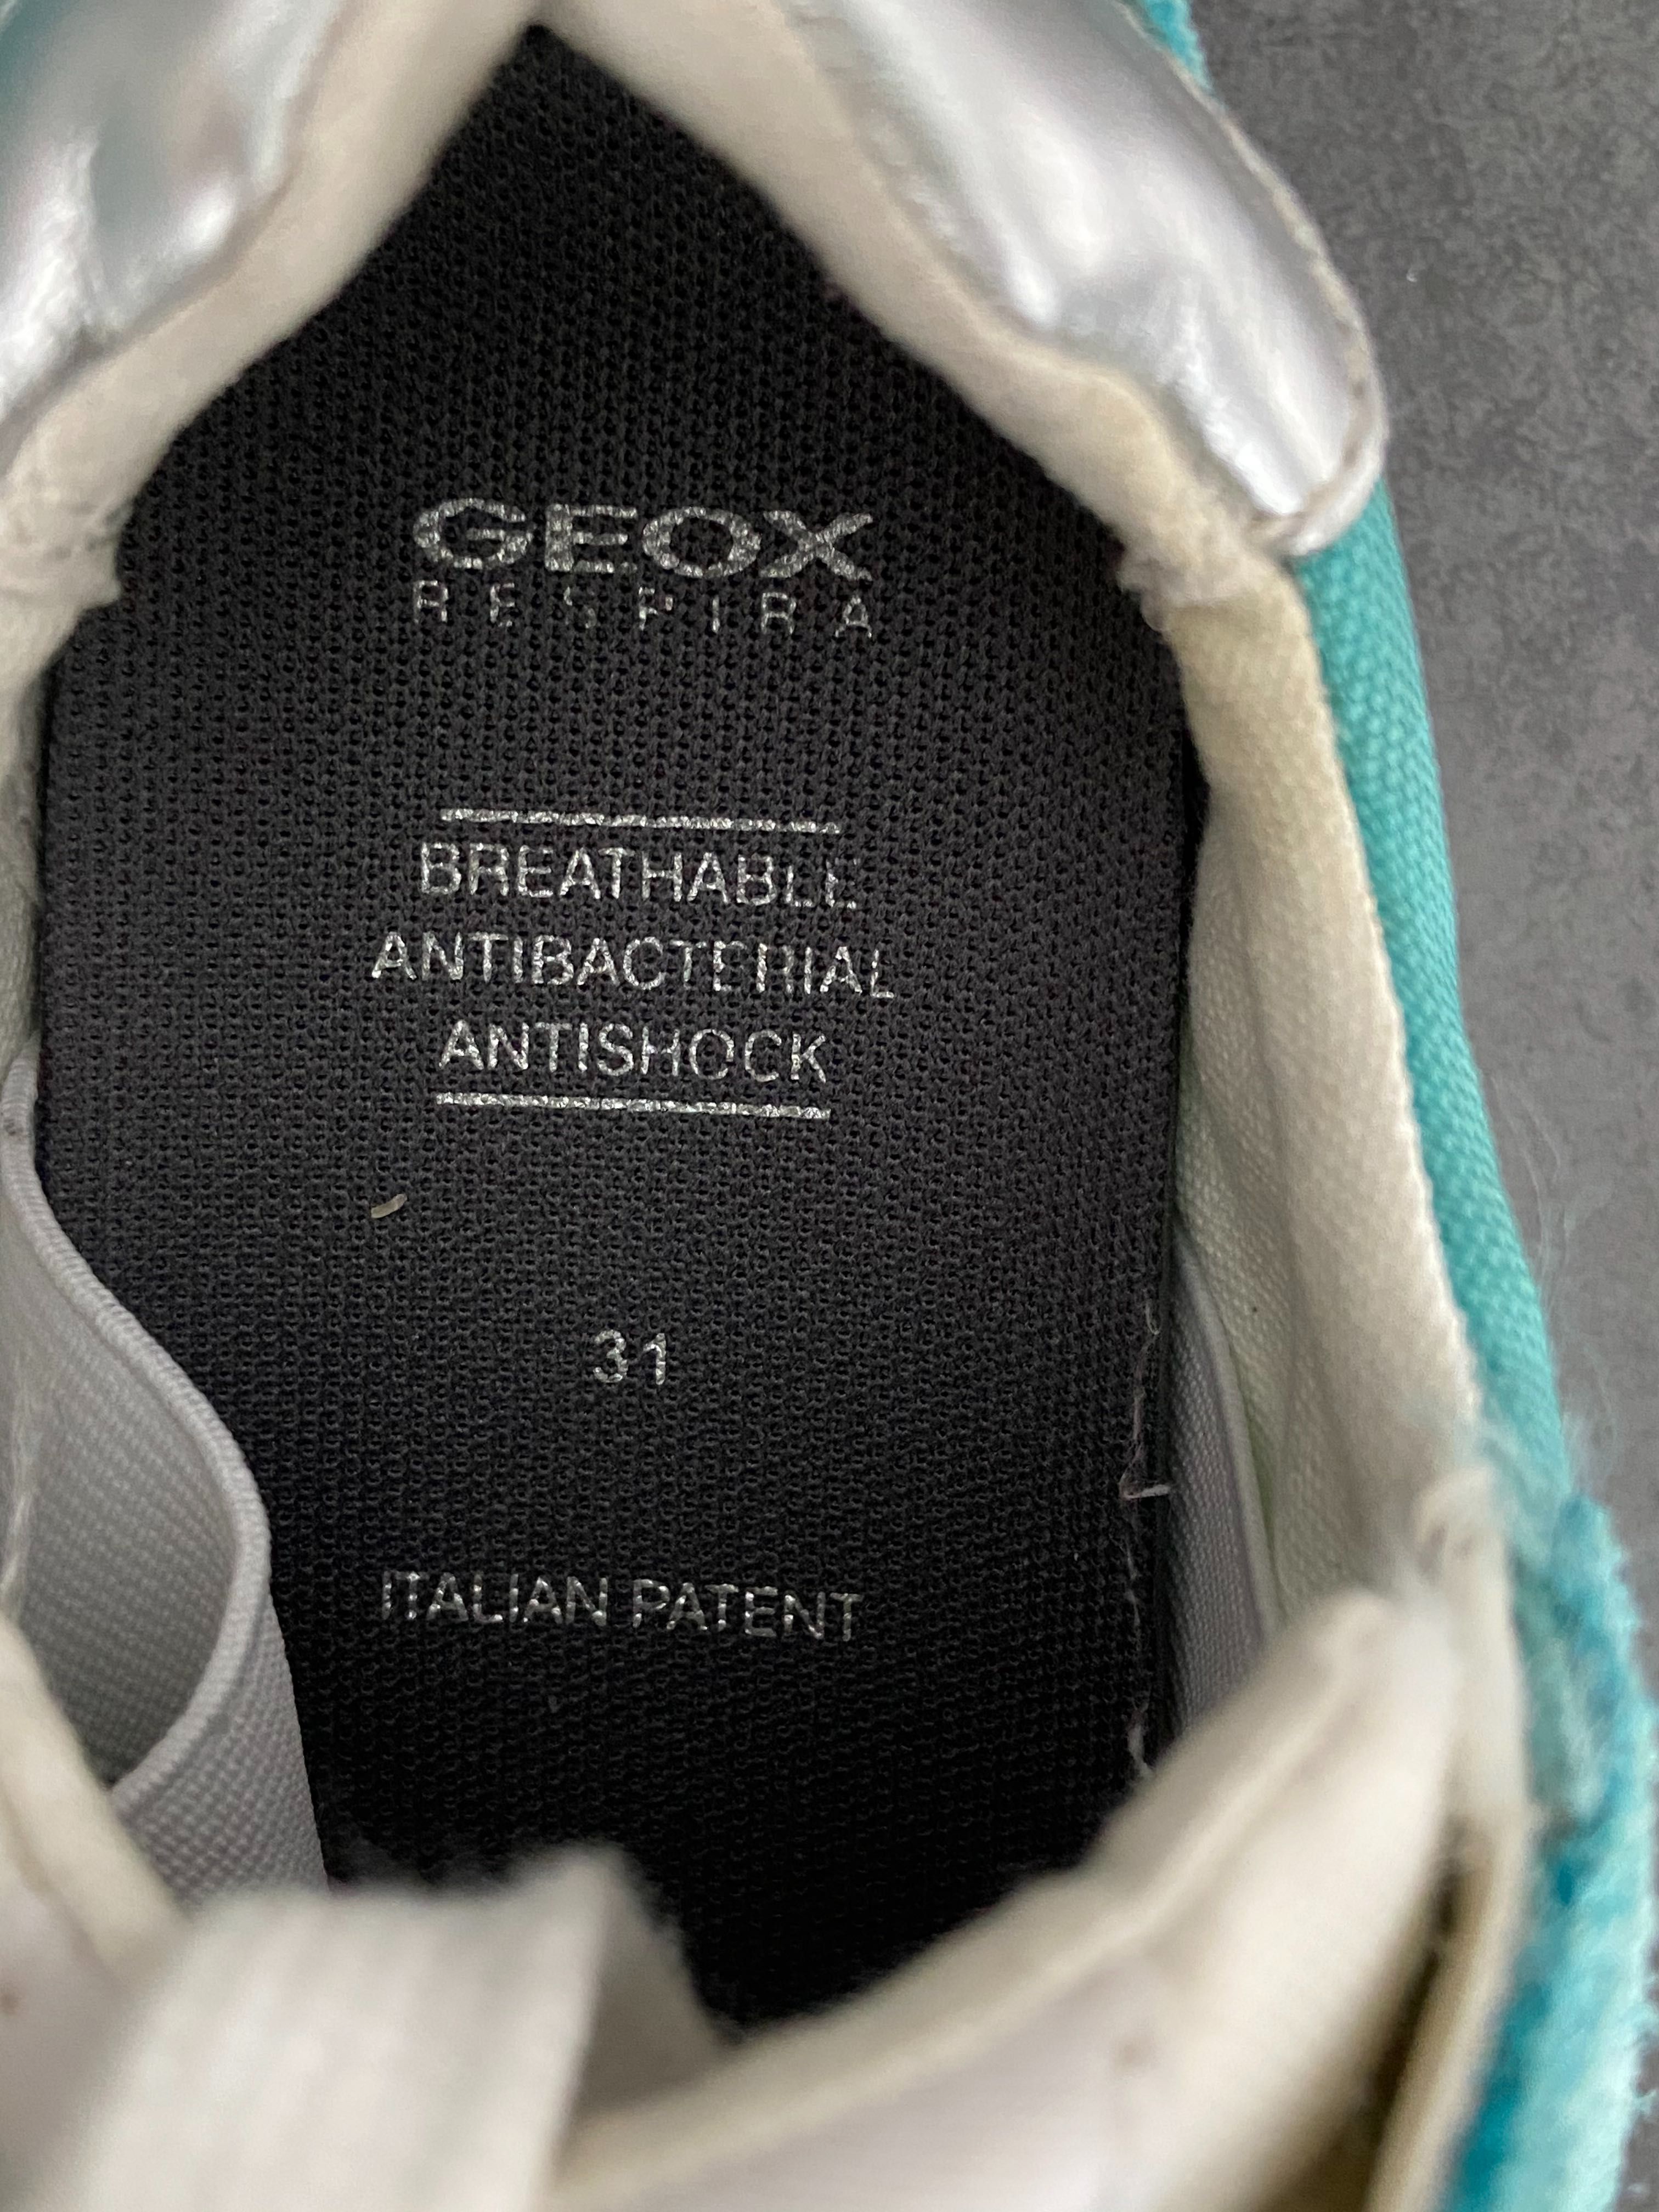 Pantofi fete, Geox, 31